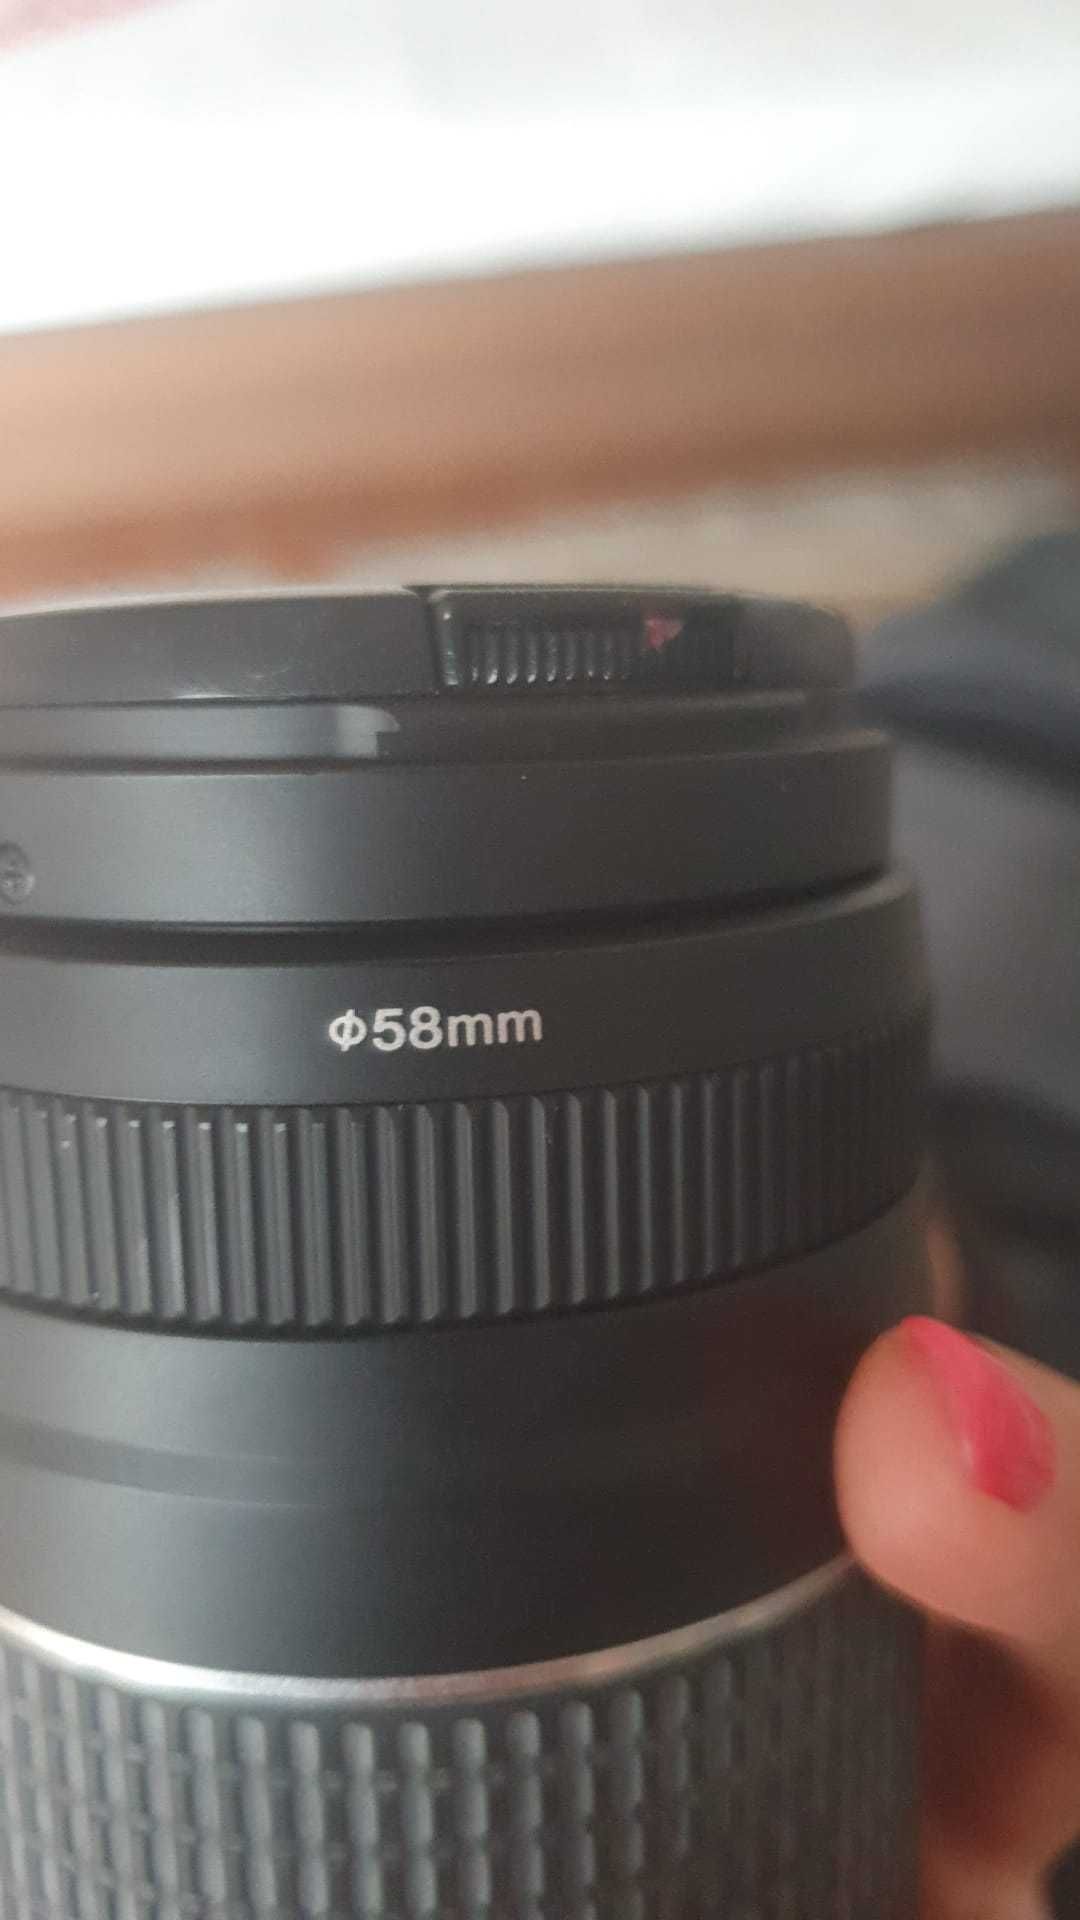 Canon Zoom Lens EF 75-300 mm 1:4 - 5.6 III